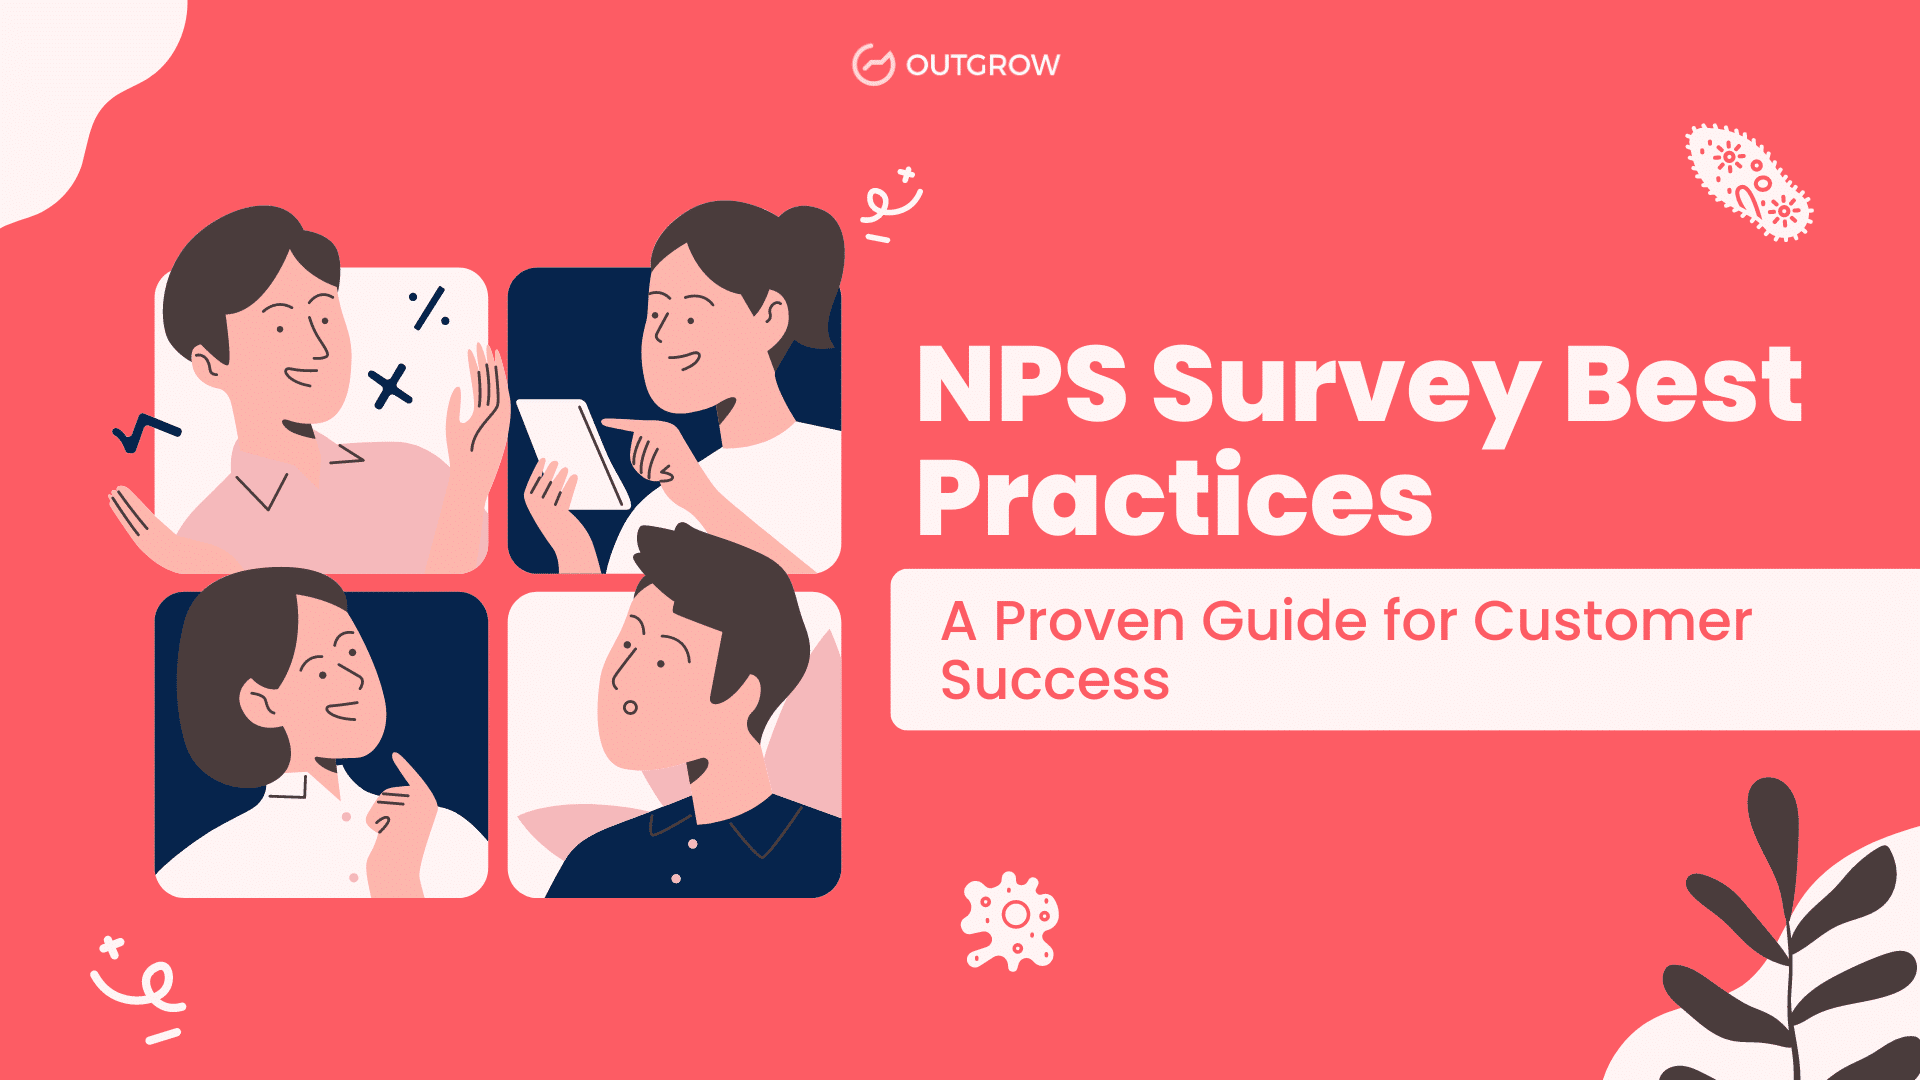 NPS survey best practices